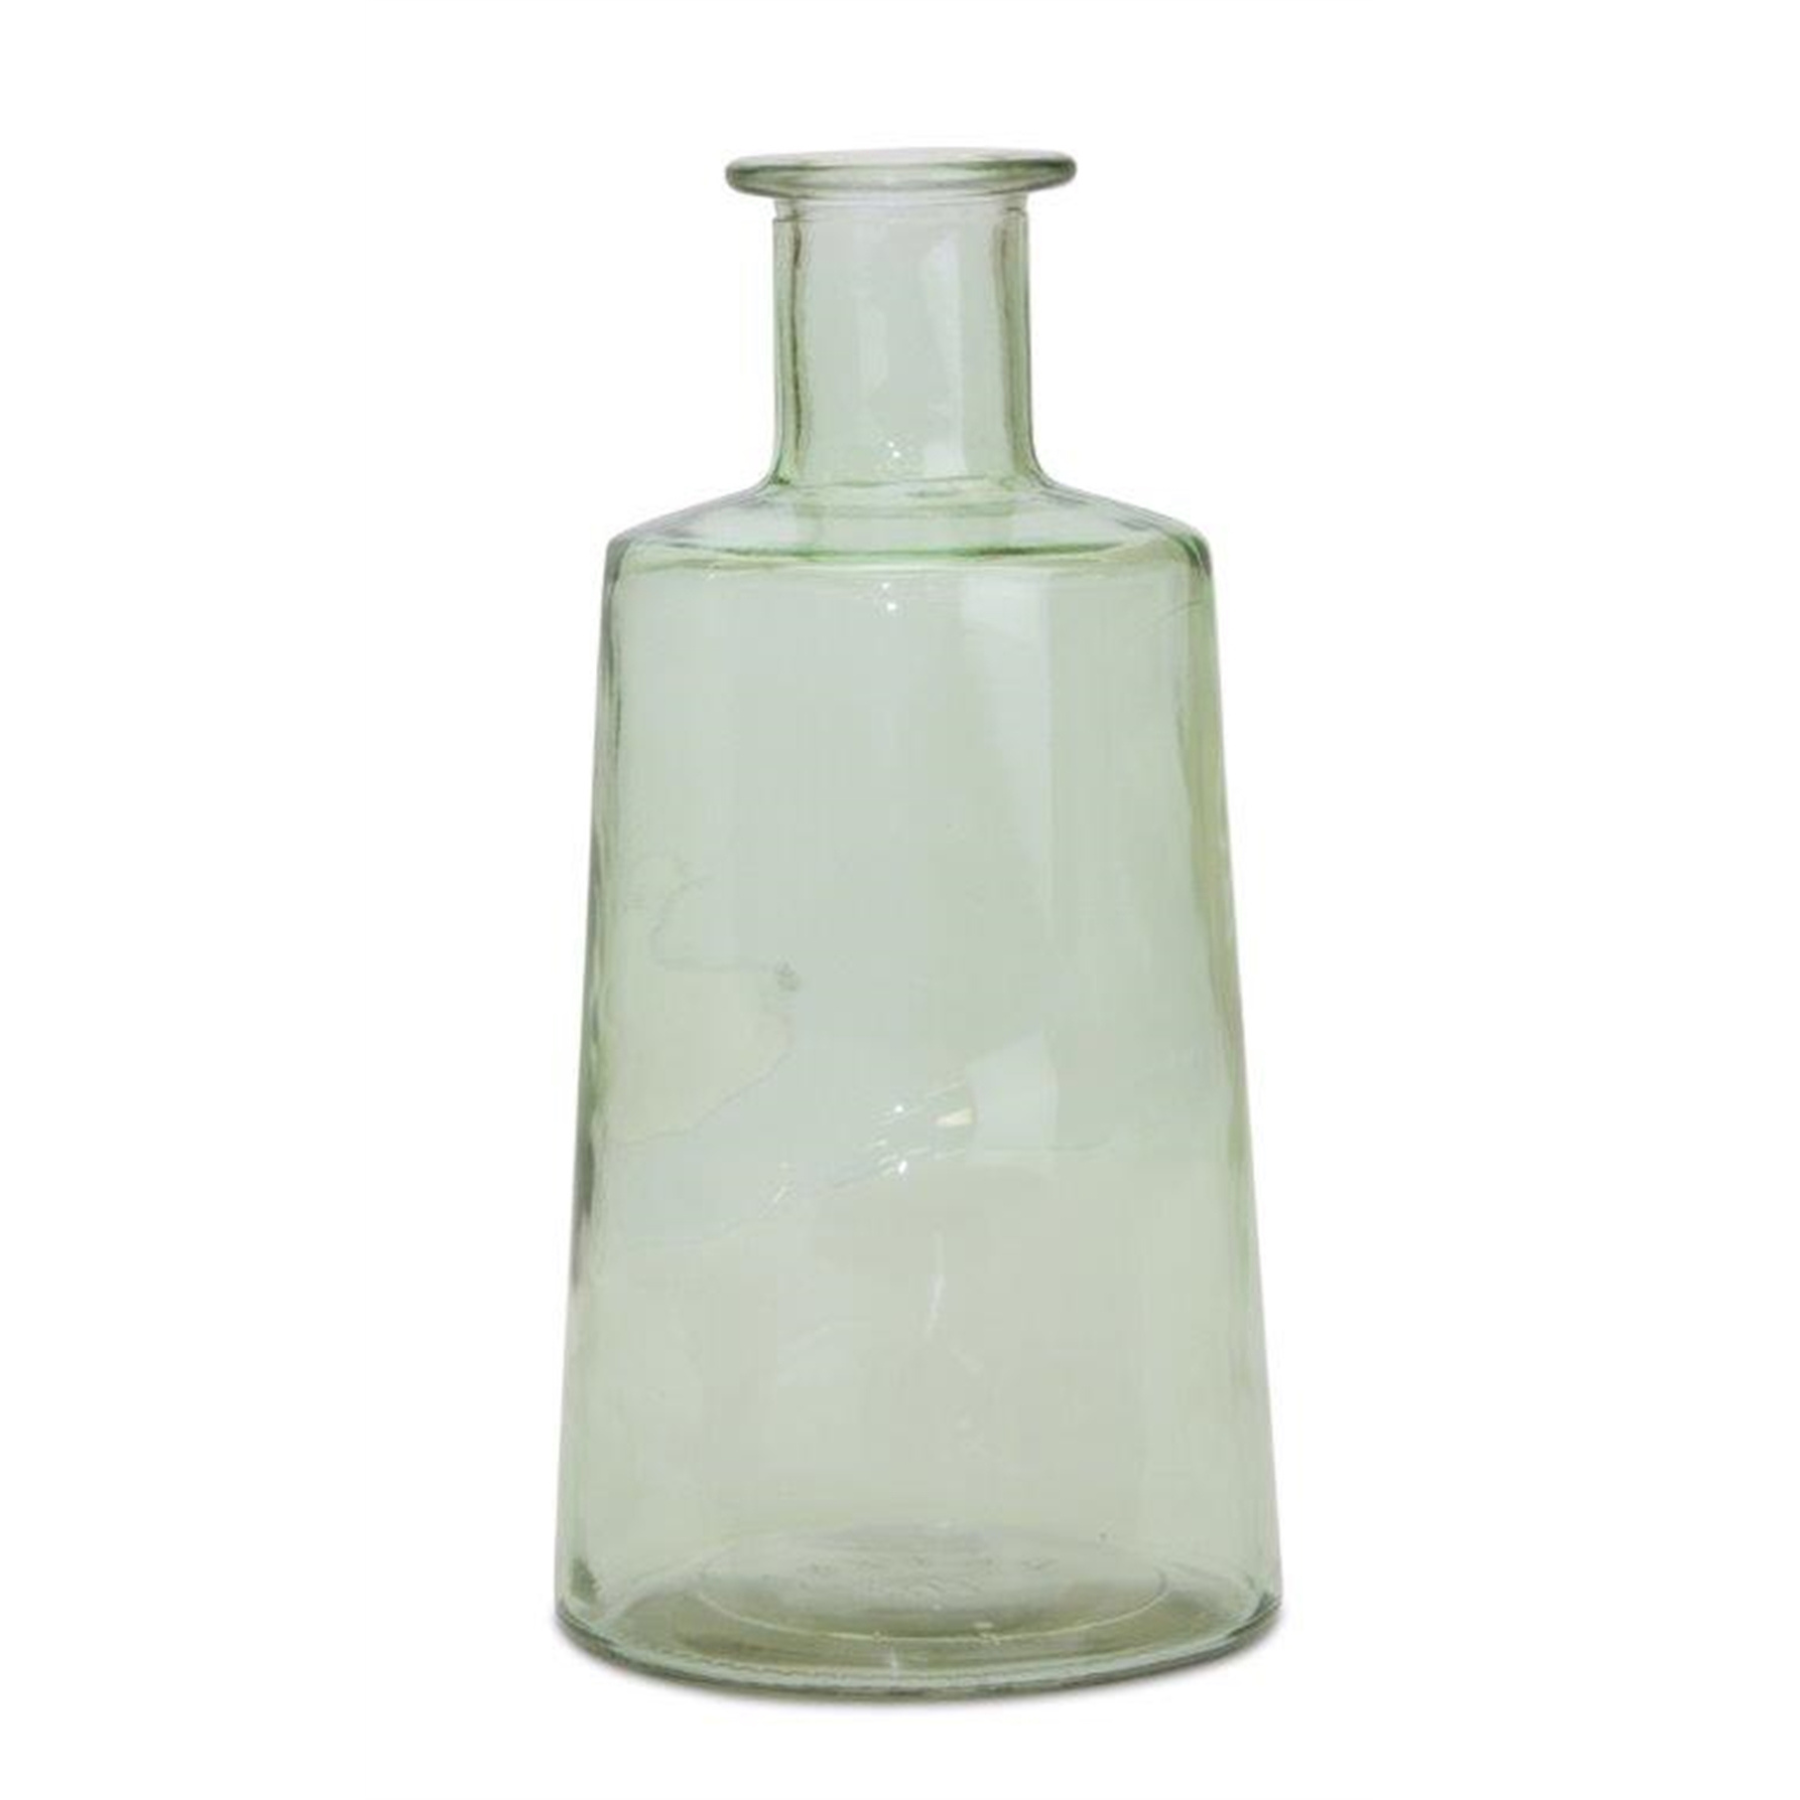 Green Glass Bottle - 9.5"H